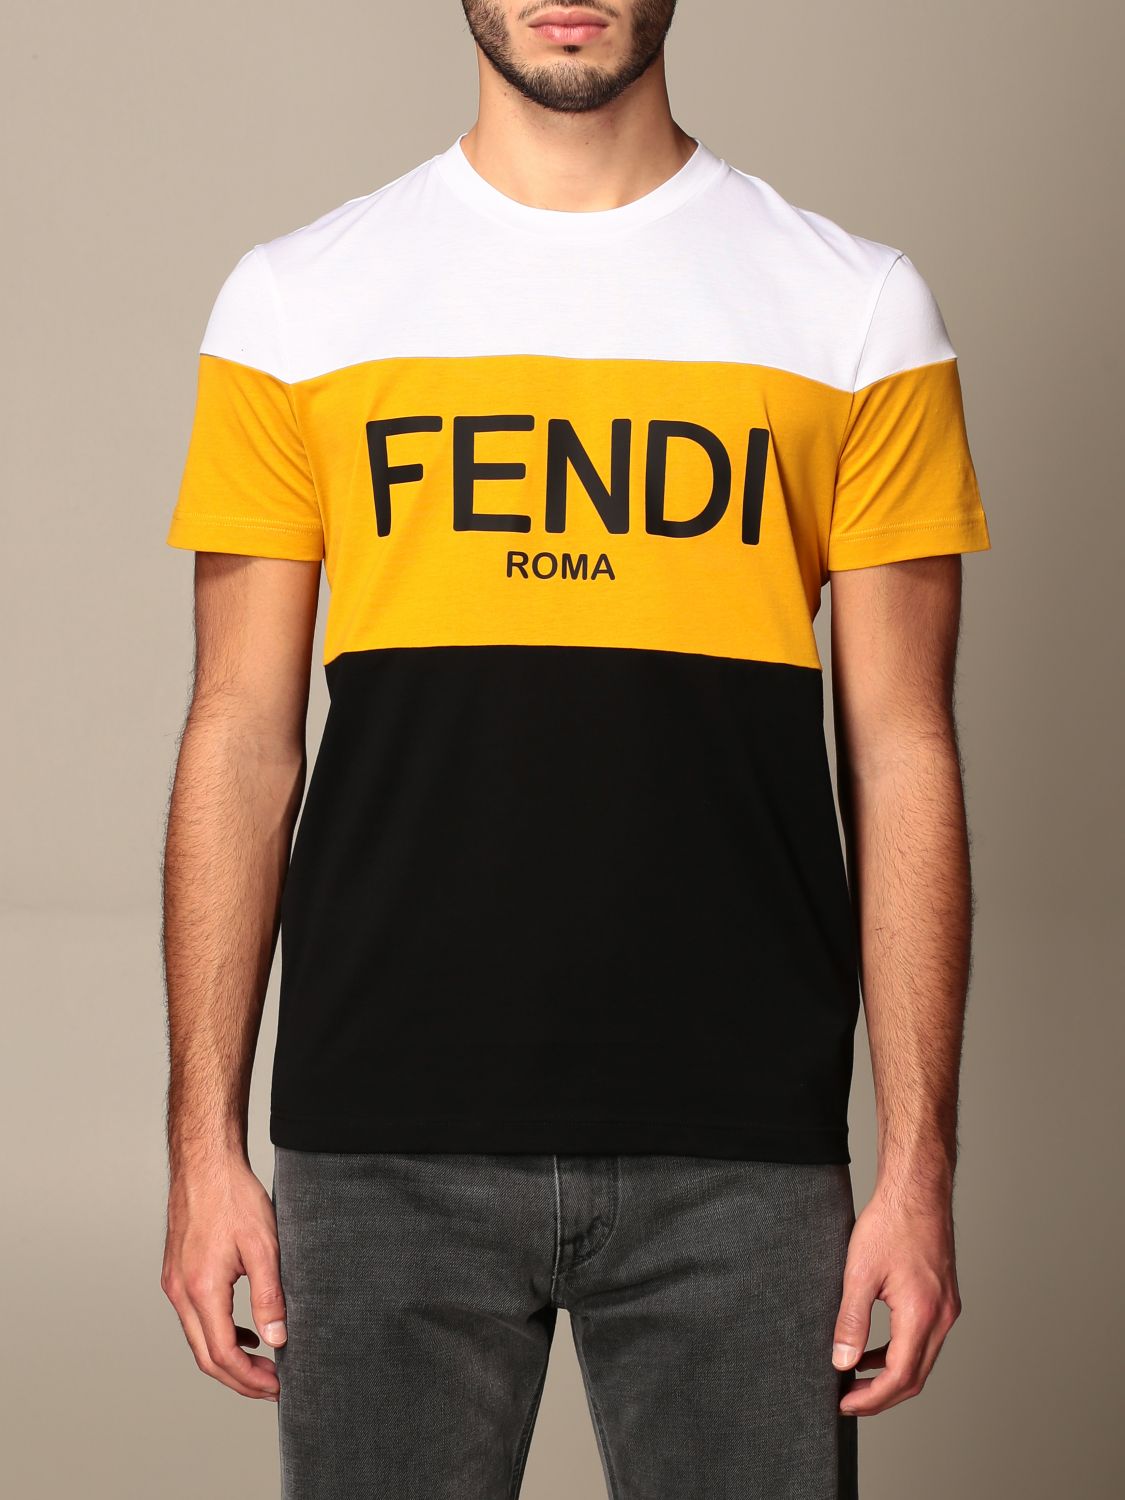 FENDI メンズ Tシャツ | tspea.org